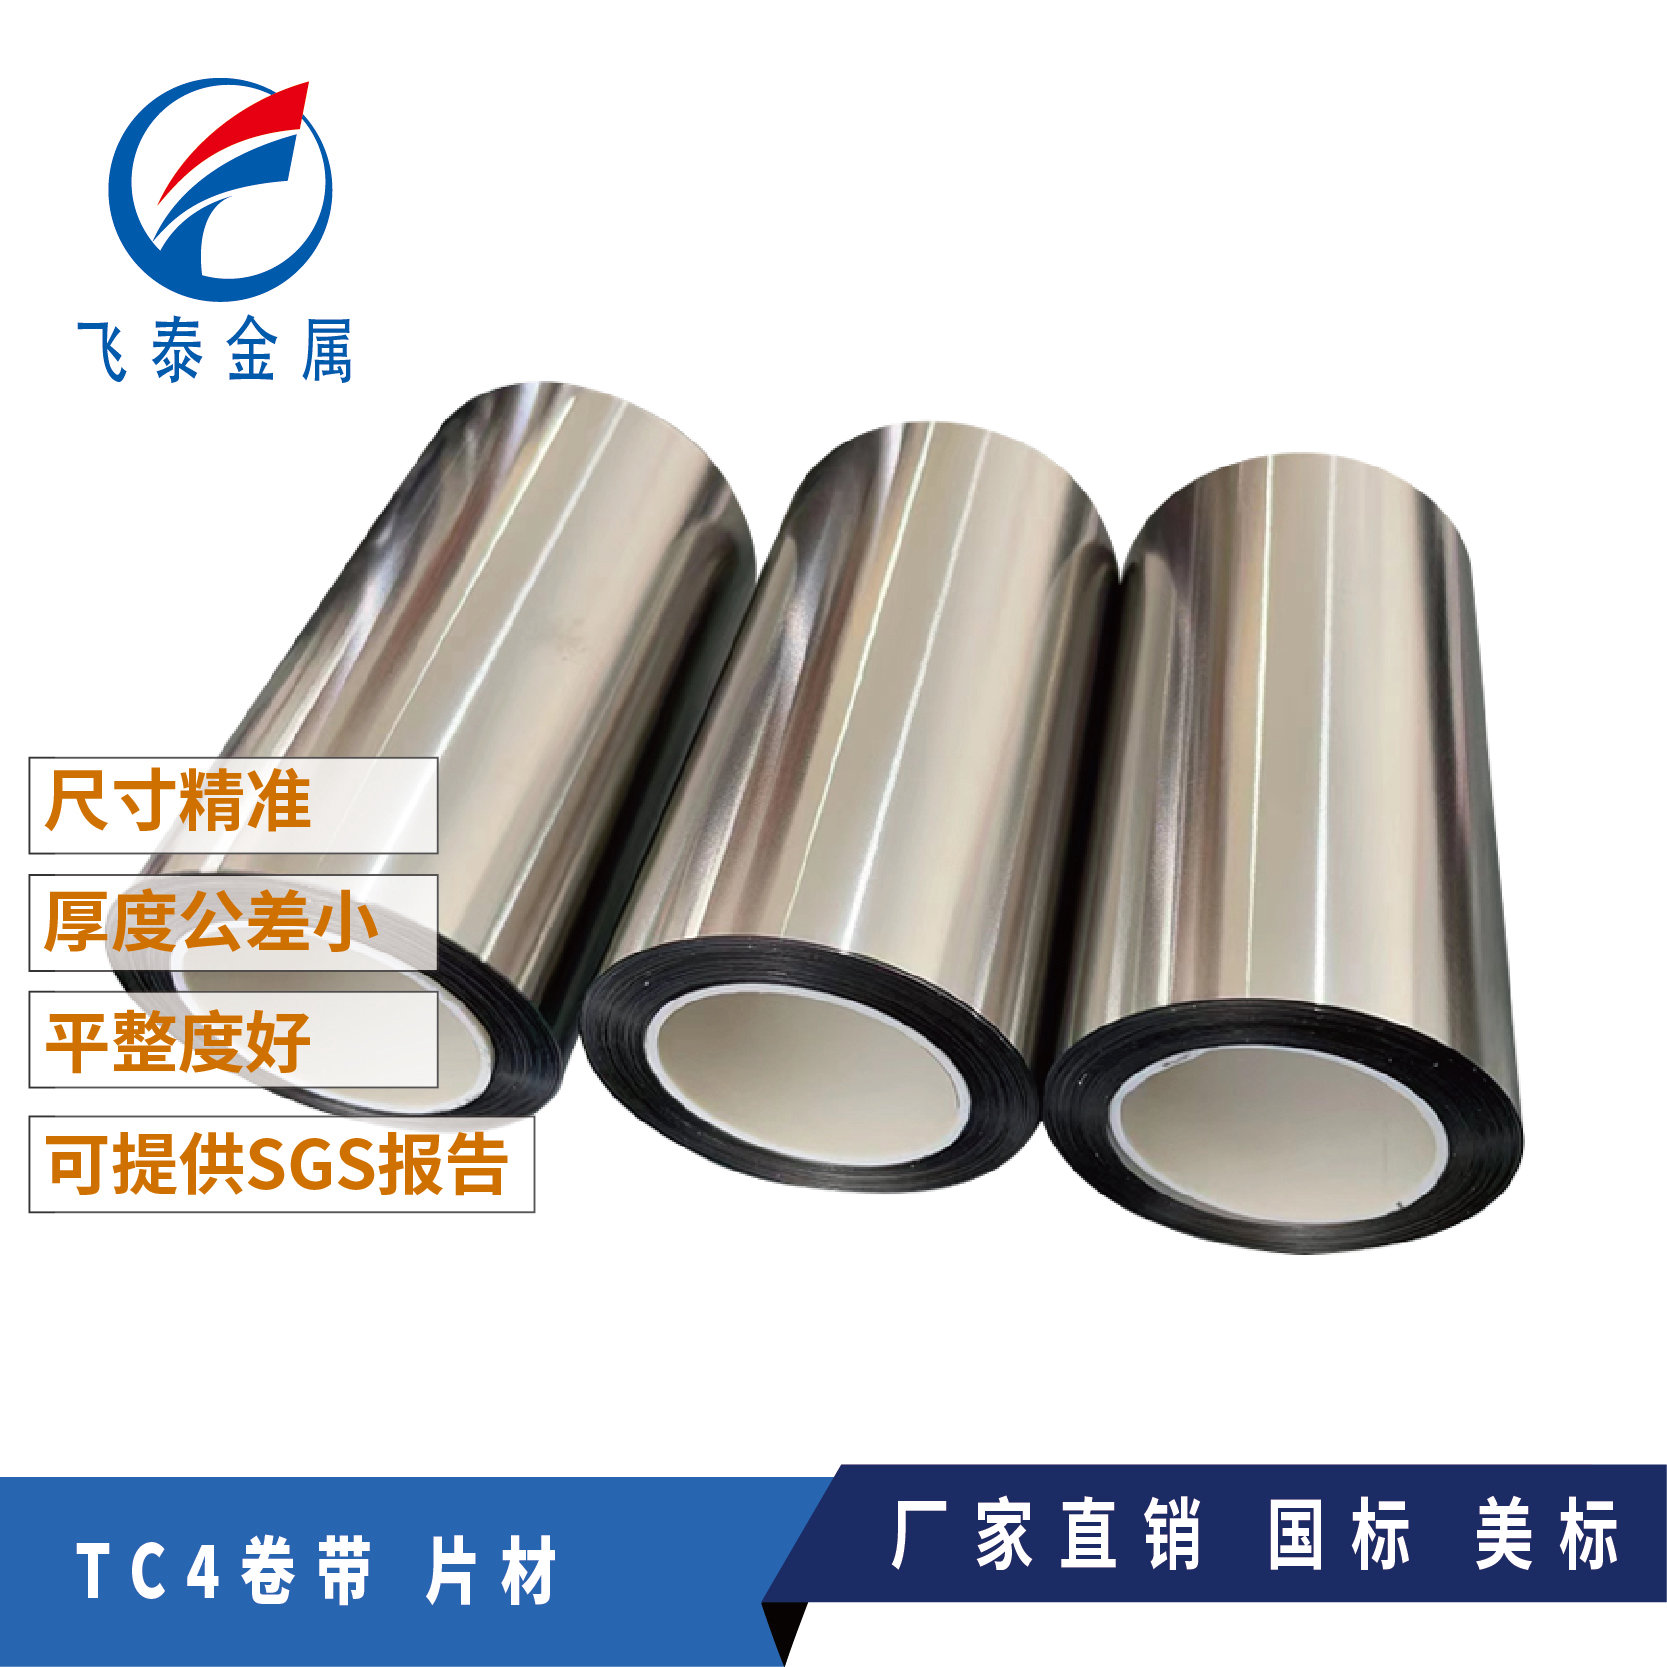 0.2mmTC4钛箔 Ti-6Al-4V钛箔  钛箔片 钛箔生产厂家